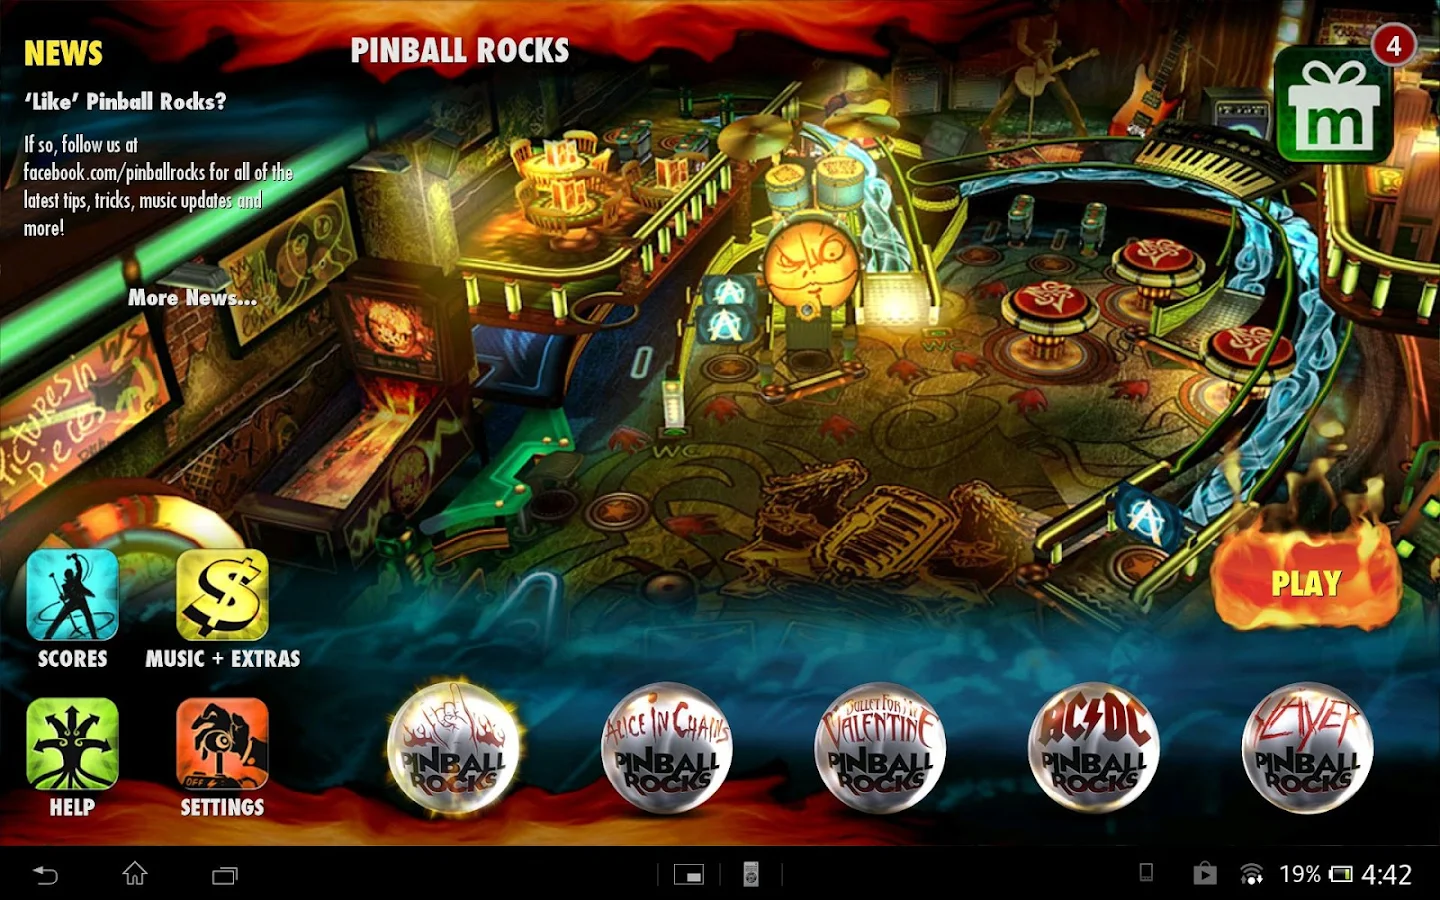  Pinball Rocks HD arriva su Android! Grandioso!